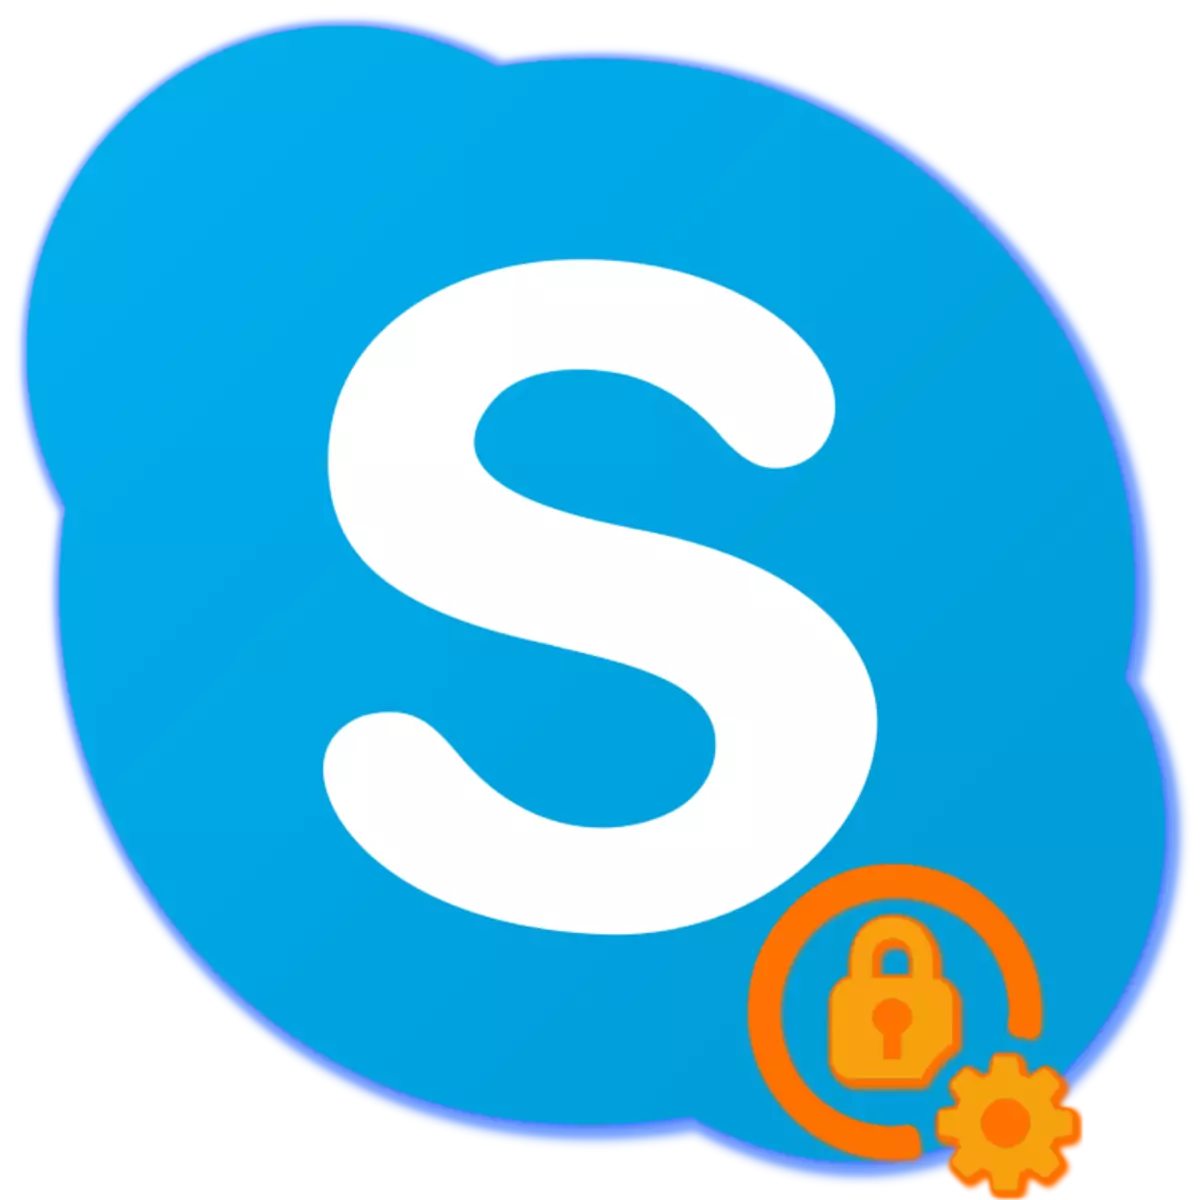 Skype-д нууц үгээ хэрхэн сэргээх вэ